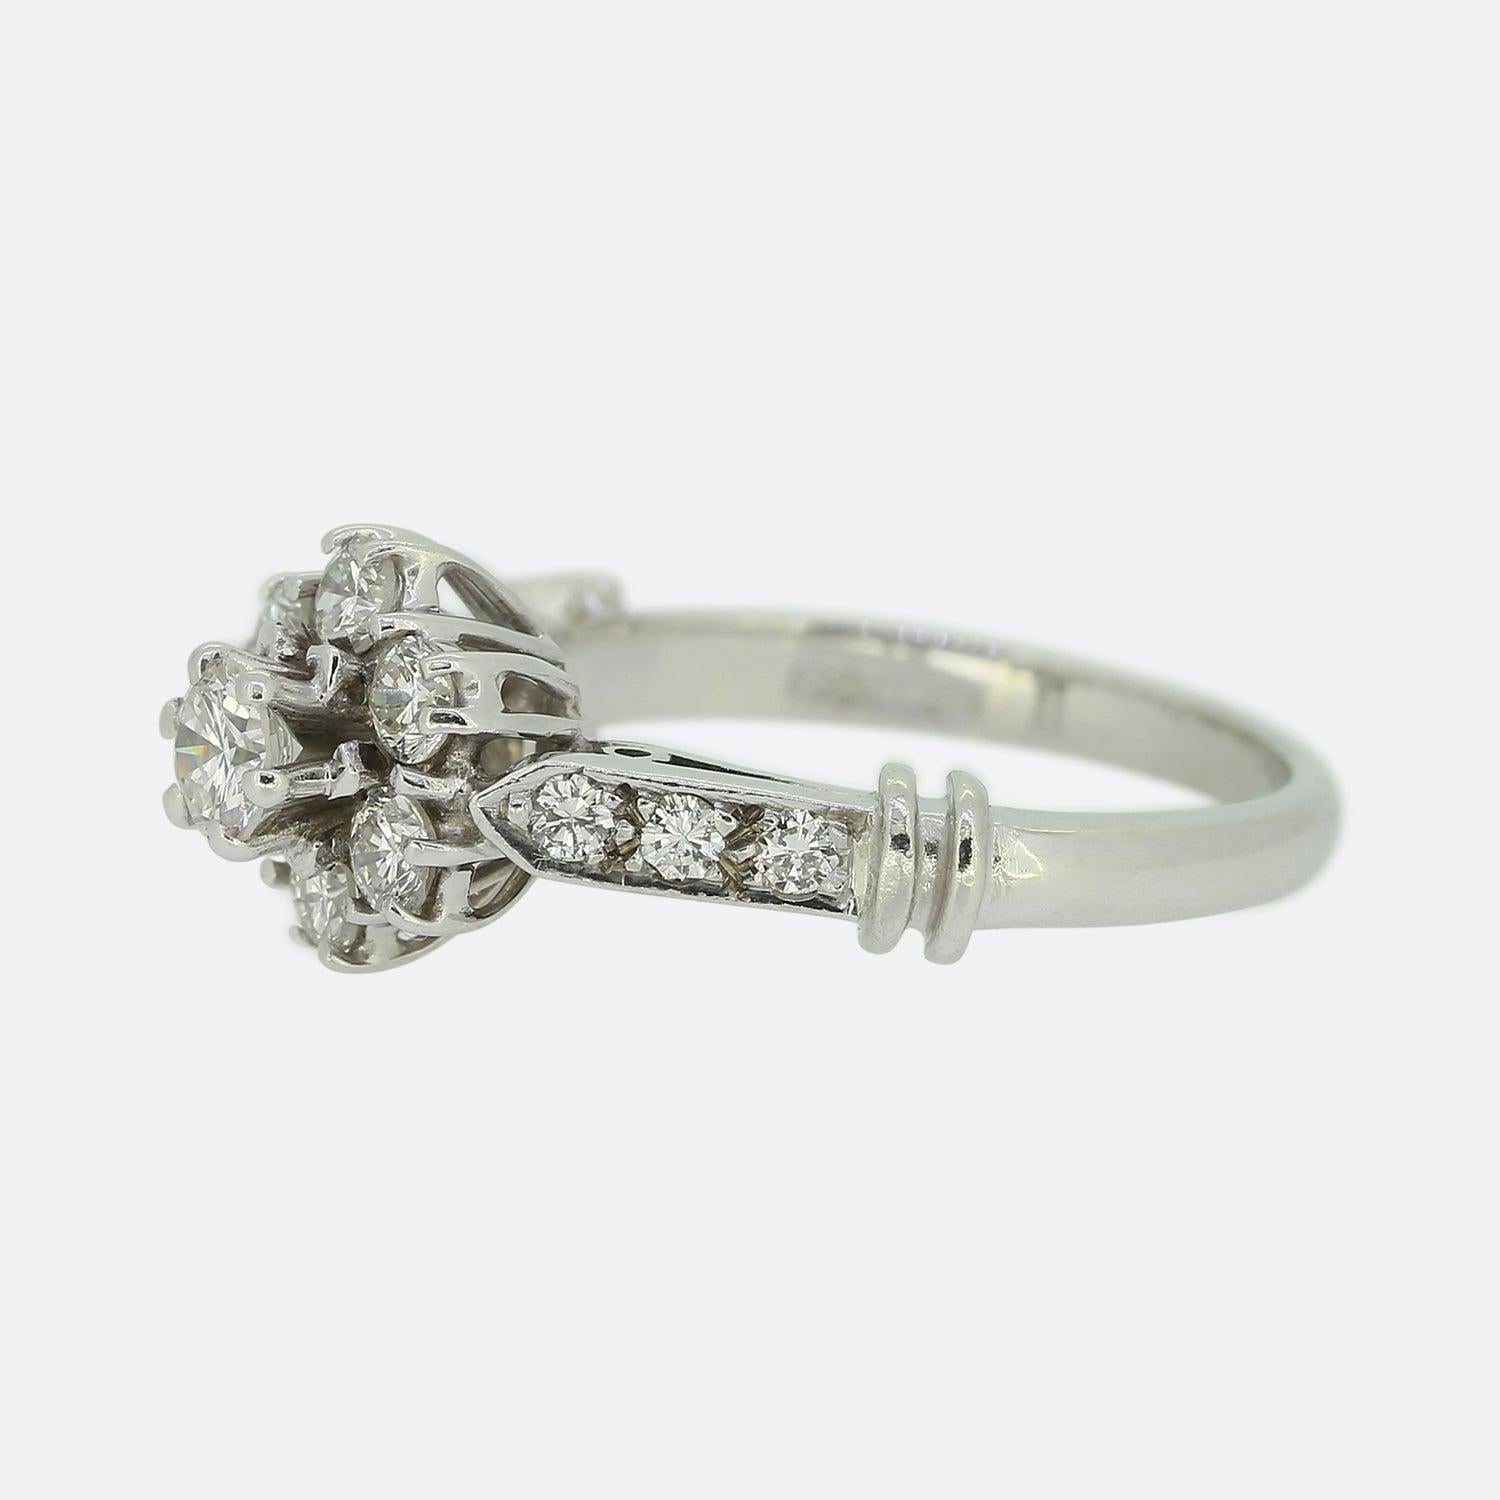 Hier haben wir einen wunderschönen Diamant-Cluster-Ring. Dieses Vintage-Stück wurde aus 18 Karat Weiß gefertigt und zeigt einen einzelnen, leicht erhöhten runden Diamanten im Brillantschliff in der Mitte der Vorderseite. Dieser Hauptstein wird dann